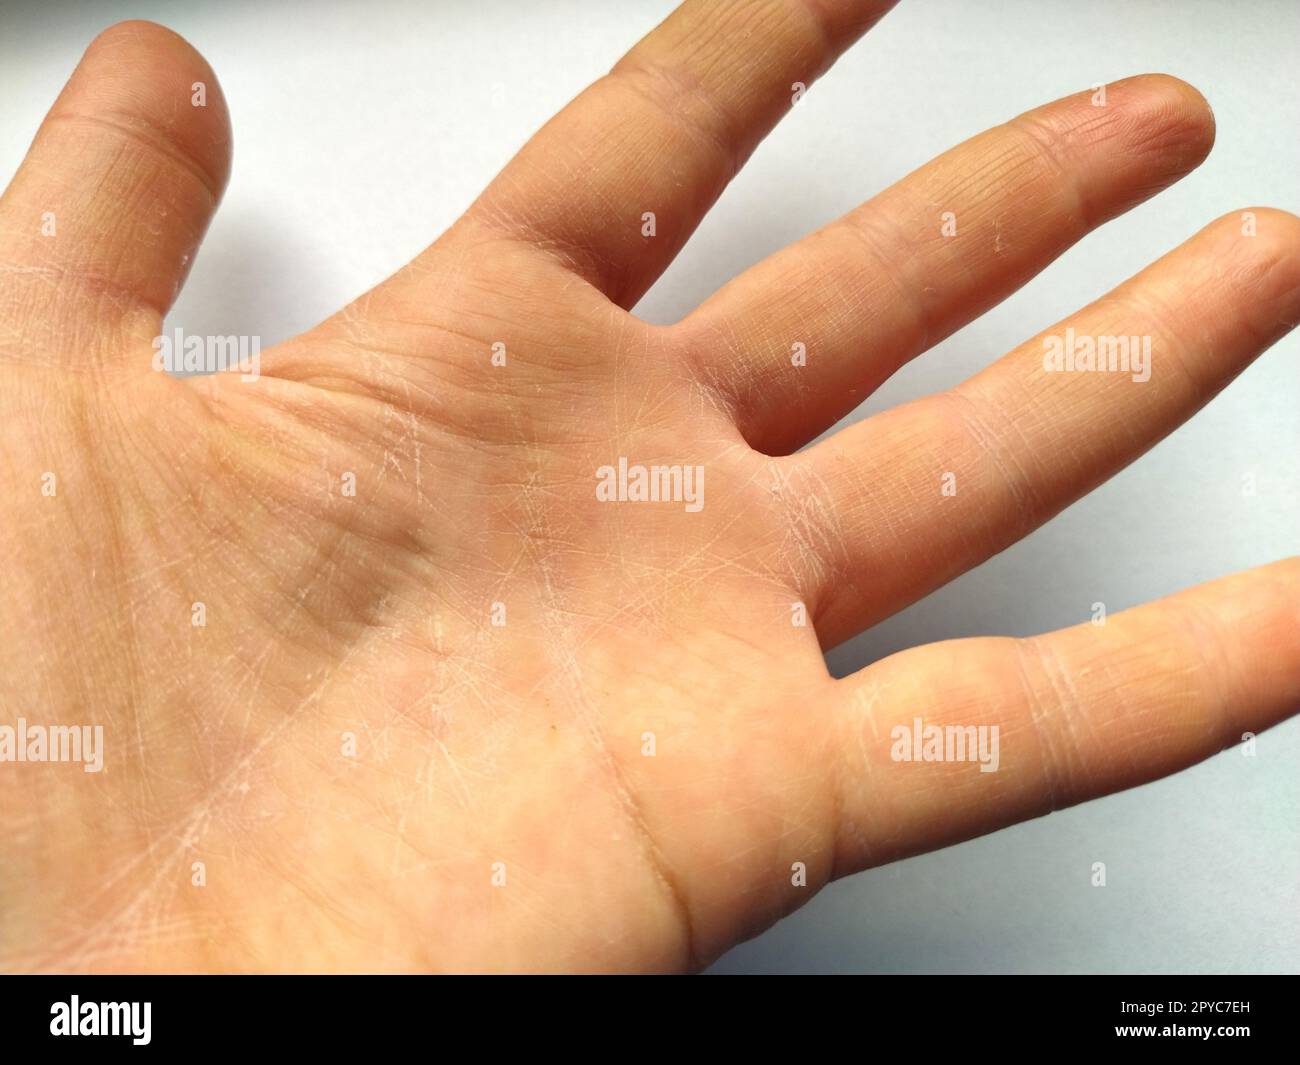 Mano femenina con piel atópica seca. Fondo blanco. Primer plano de la piel  en la palma de la mano y los dedos. Derma en necesidad de cuidado e  hidratación. Arrugas, sequedad e